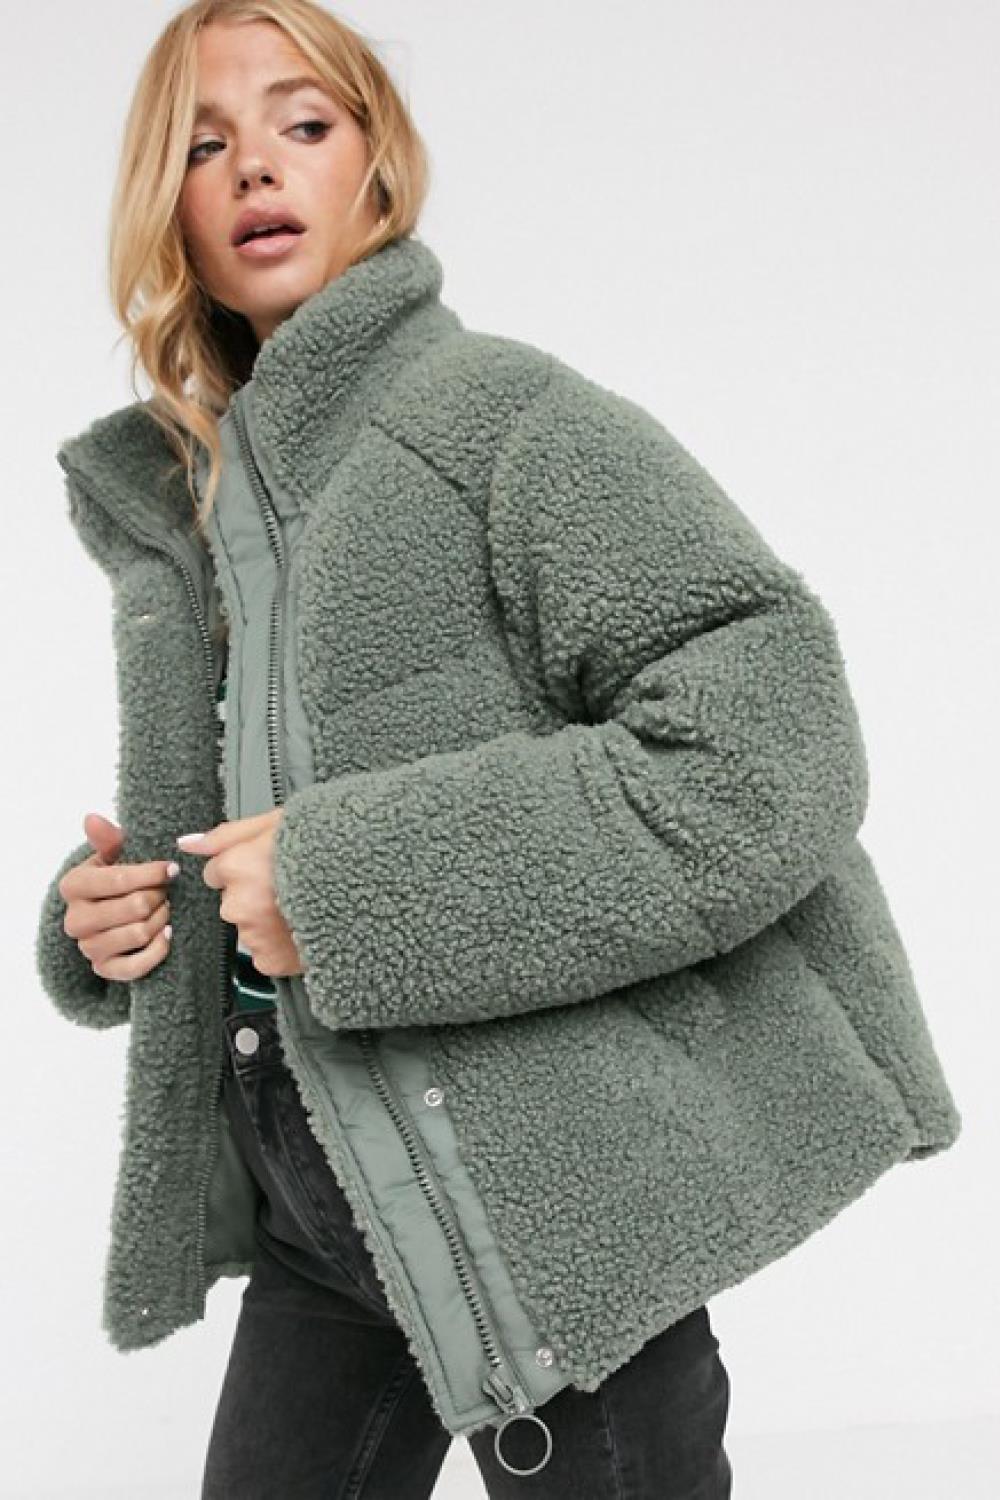 plumíferos de moda invierno 2019 asos 70,99€